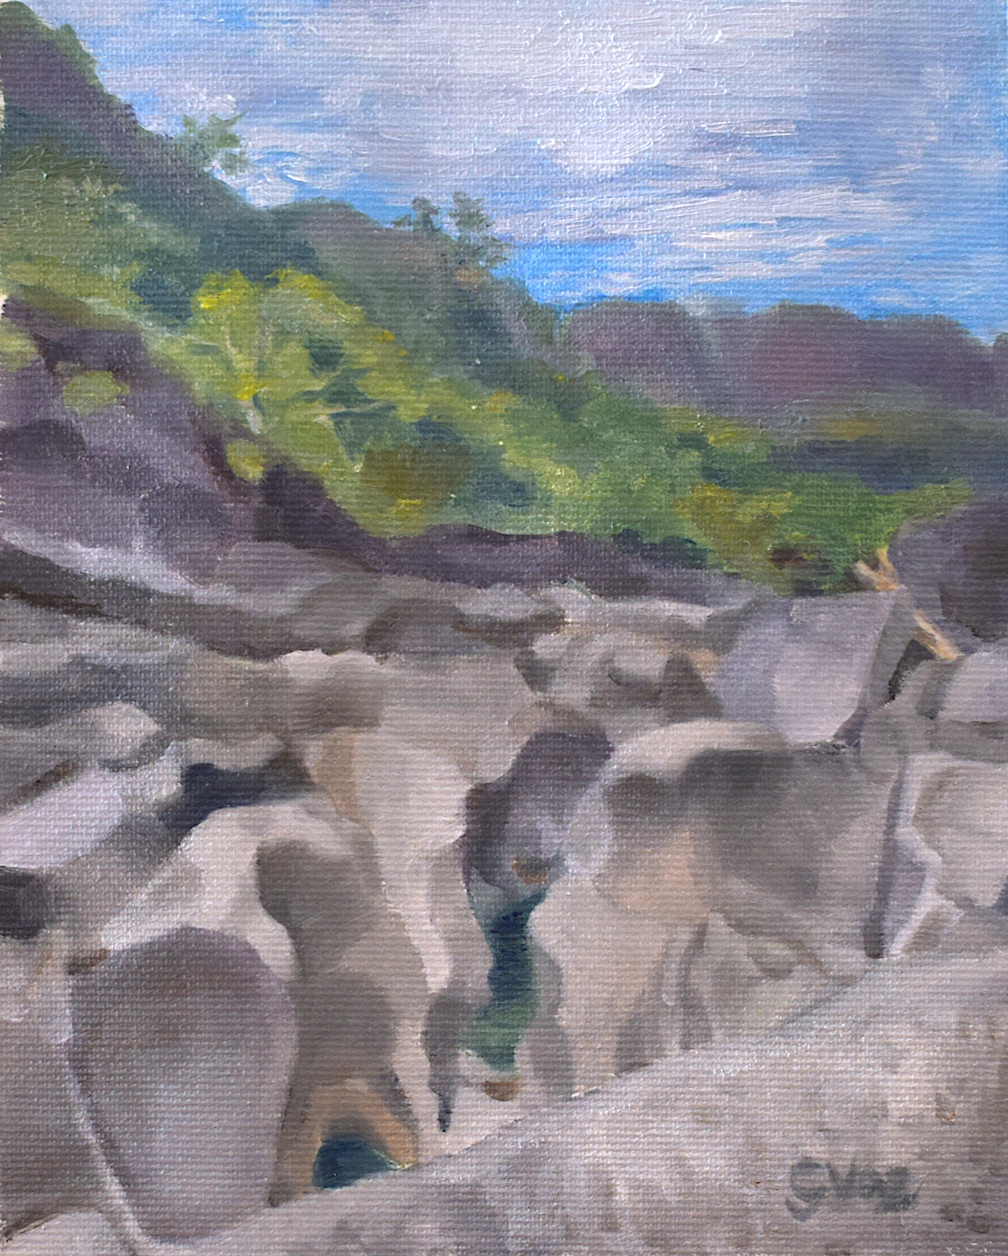 Vale da Lua, oil on canvas, 19 x 15 cm, 2021